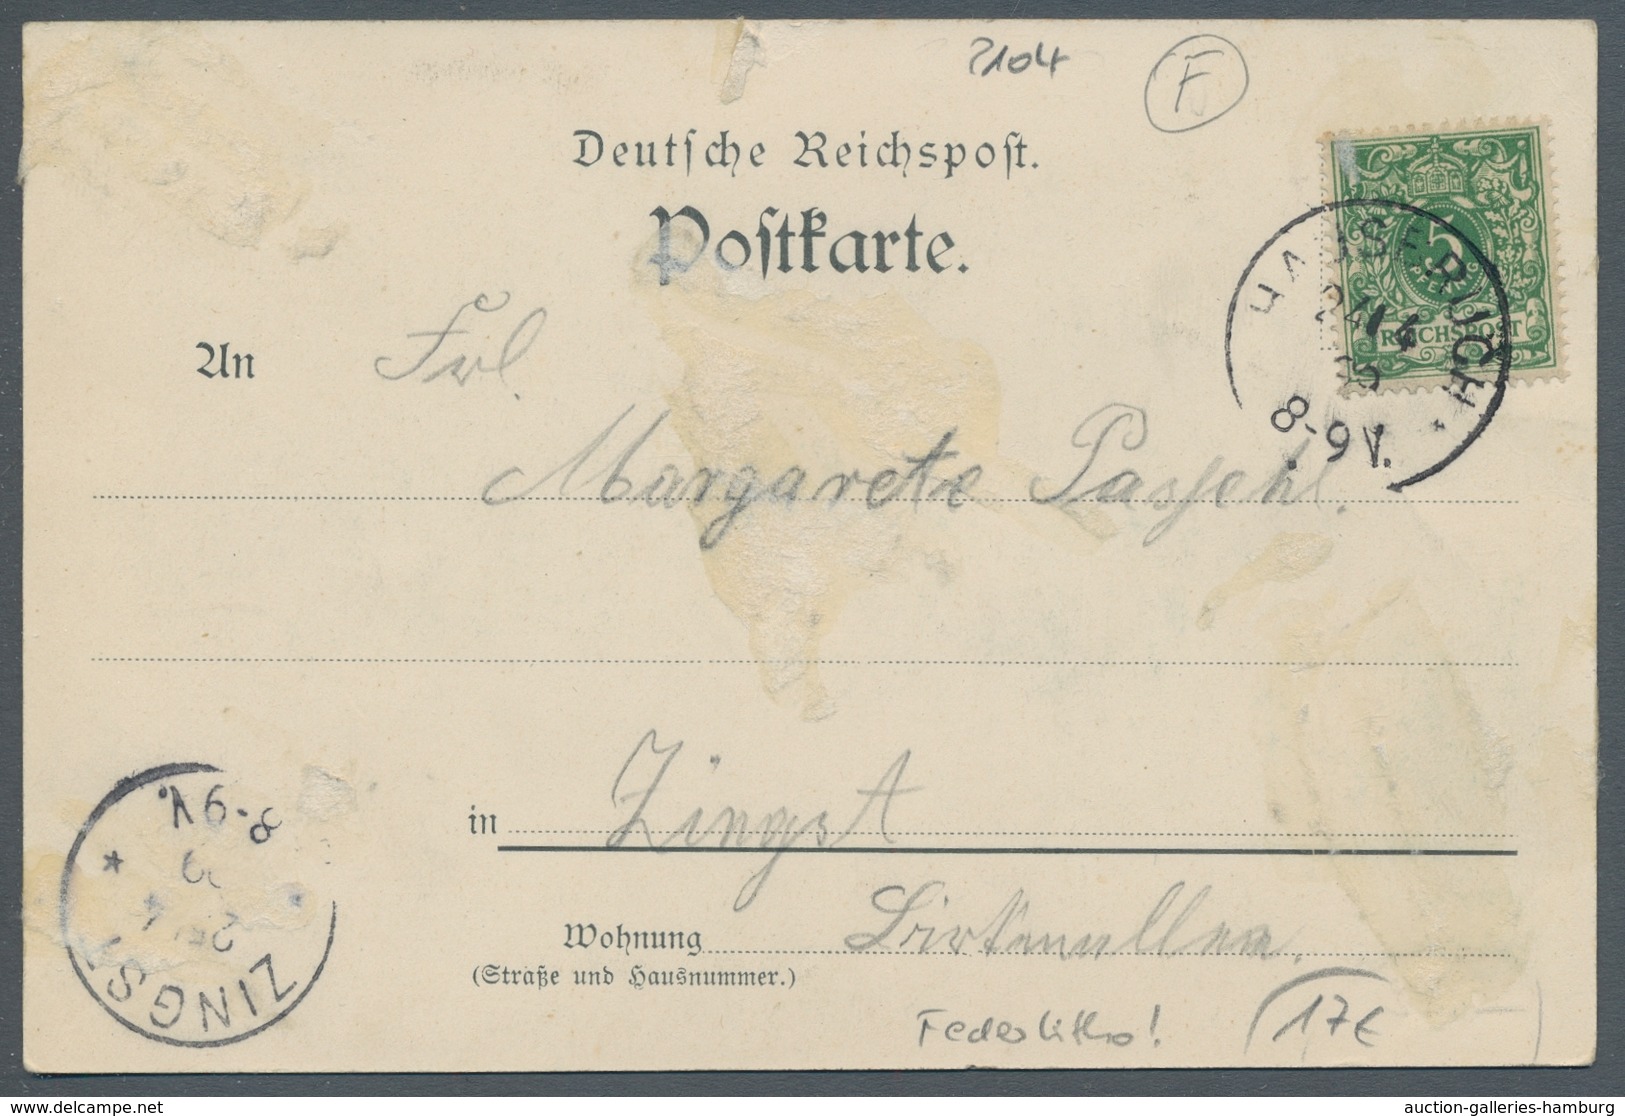 Ansichtskarten: Deutschland: 1890/1960 umfangreicher Posten von einigen tausend meist s/w AK's, der